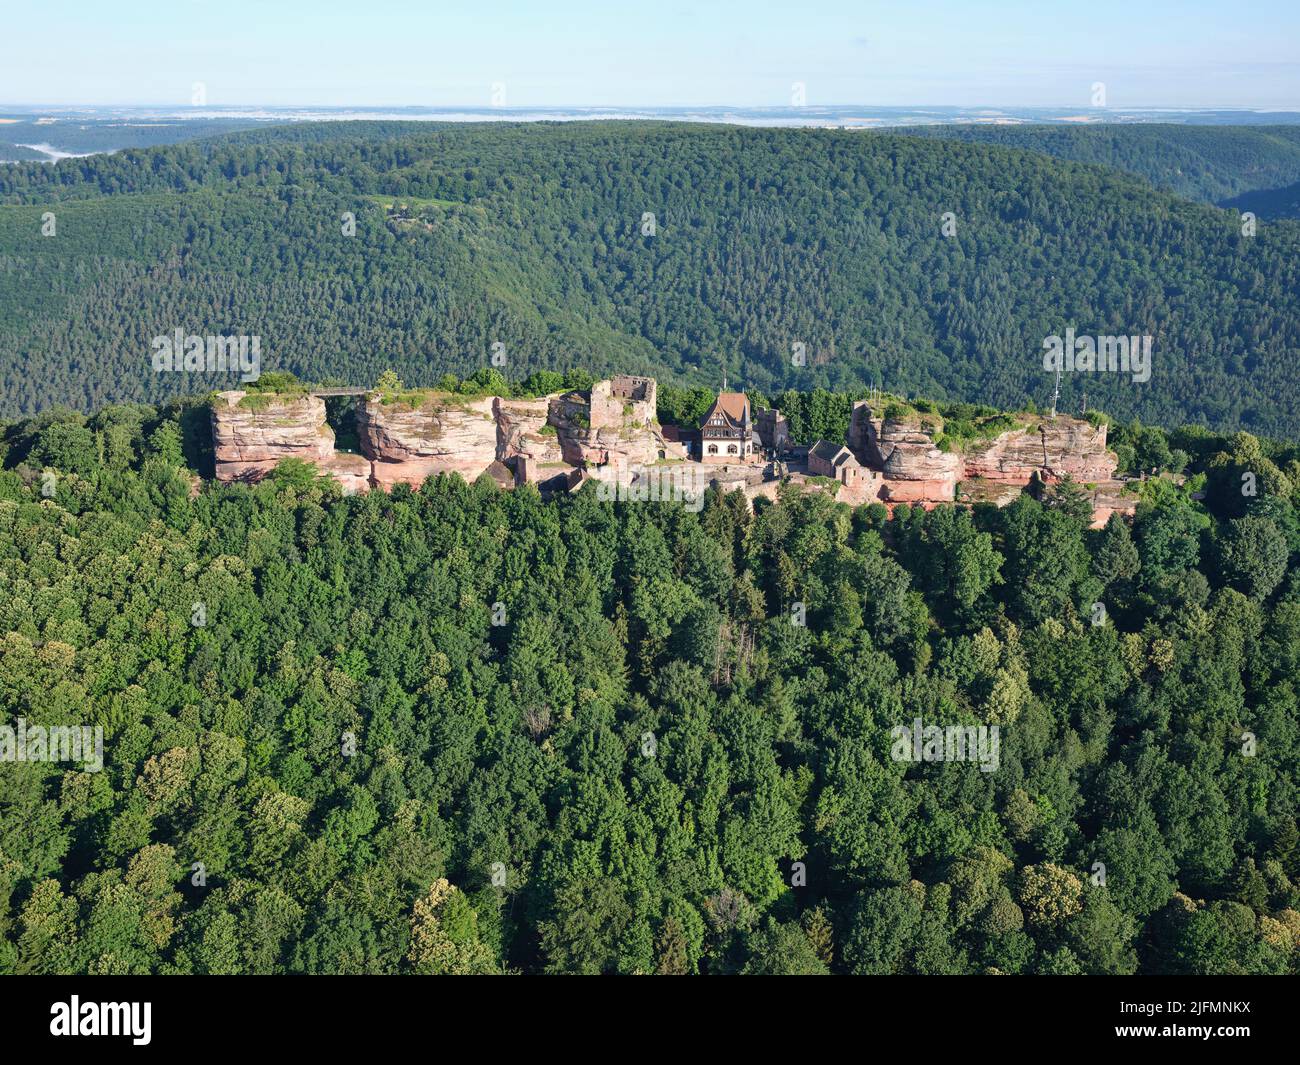 VISTA AEREA. Rovine di un castello medievale costruito su un affioramento di arenaria sulle montagne dei Vosgi orientali. Castello di Haut-Barr, Saverne, Alsazia, Francia. Foto Stock